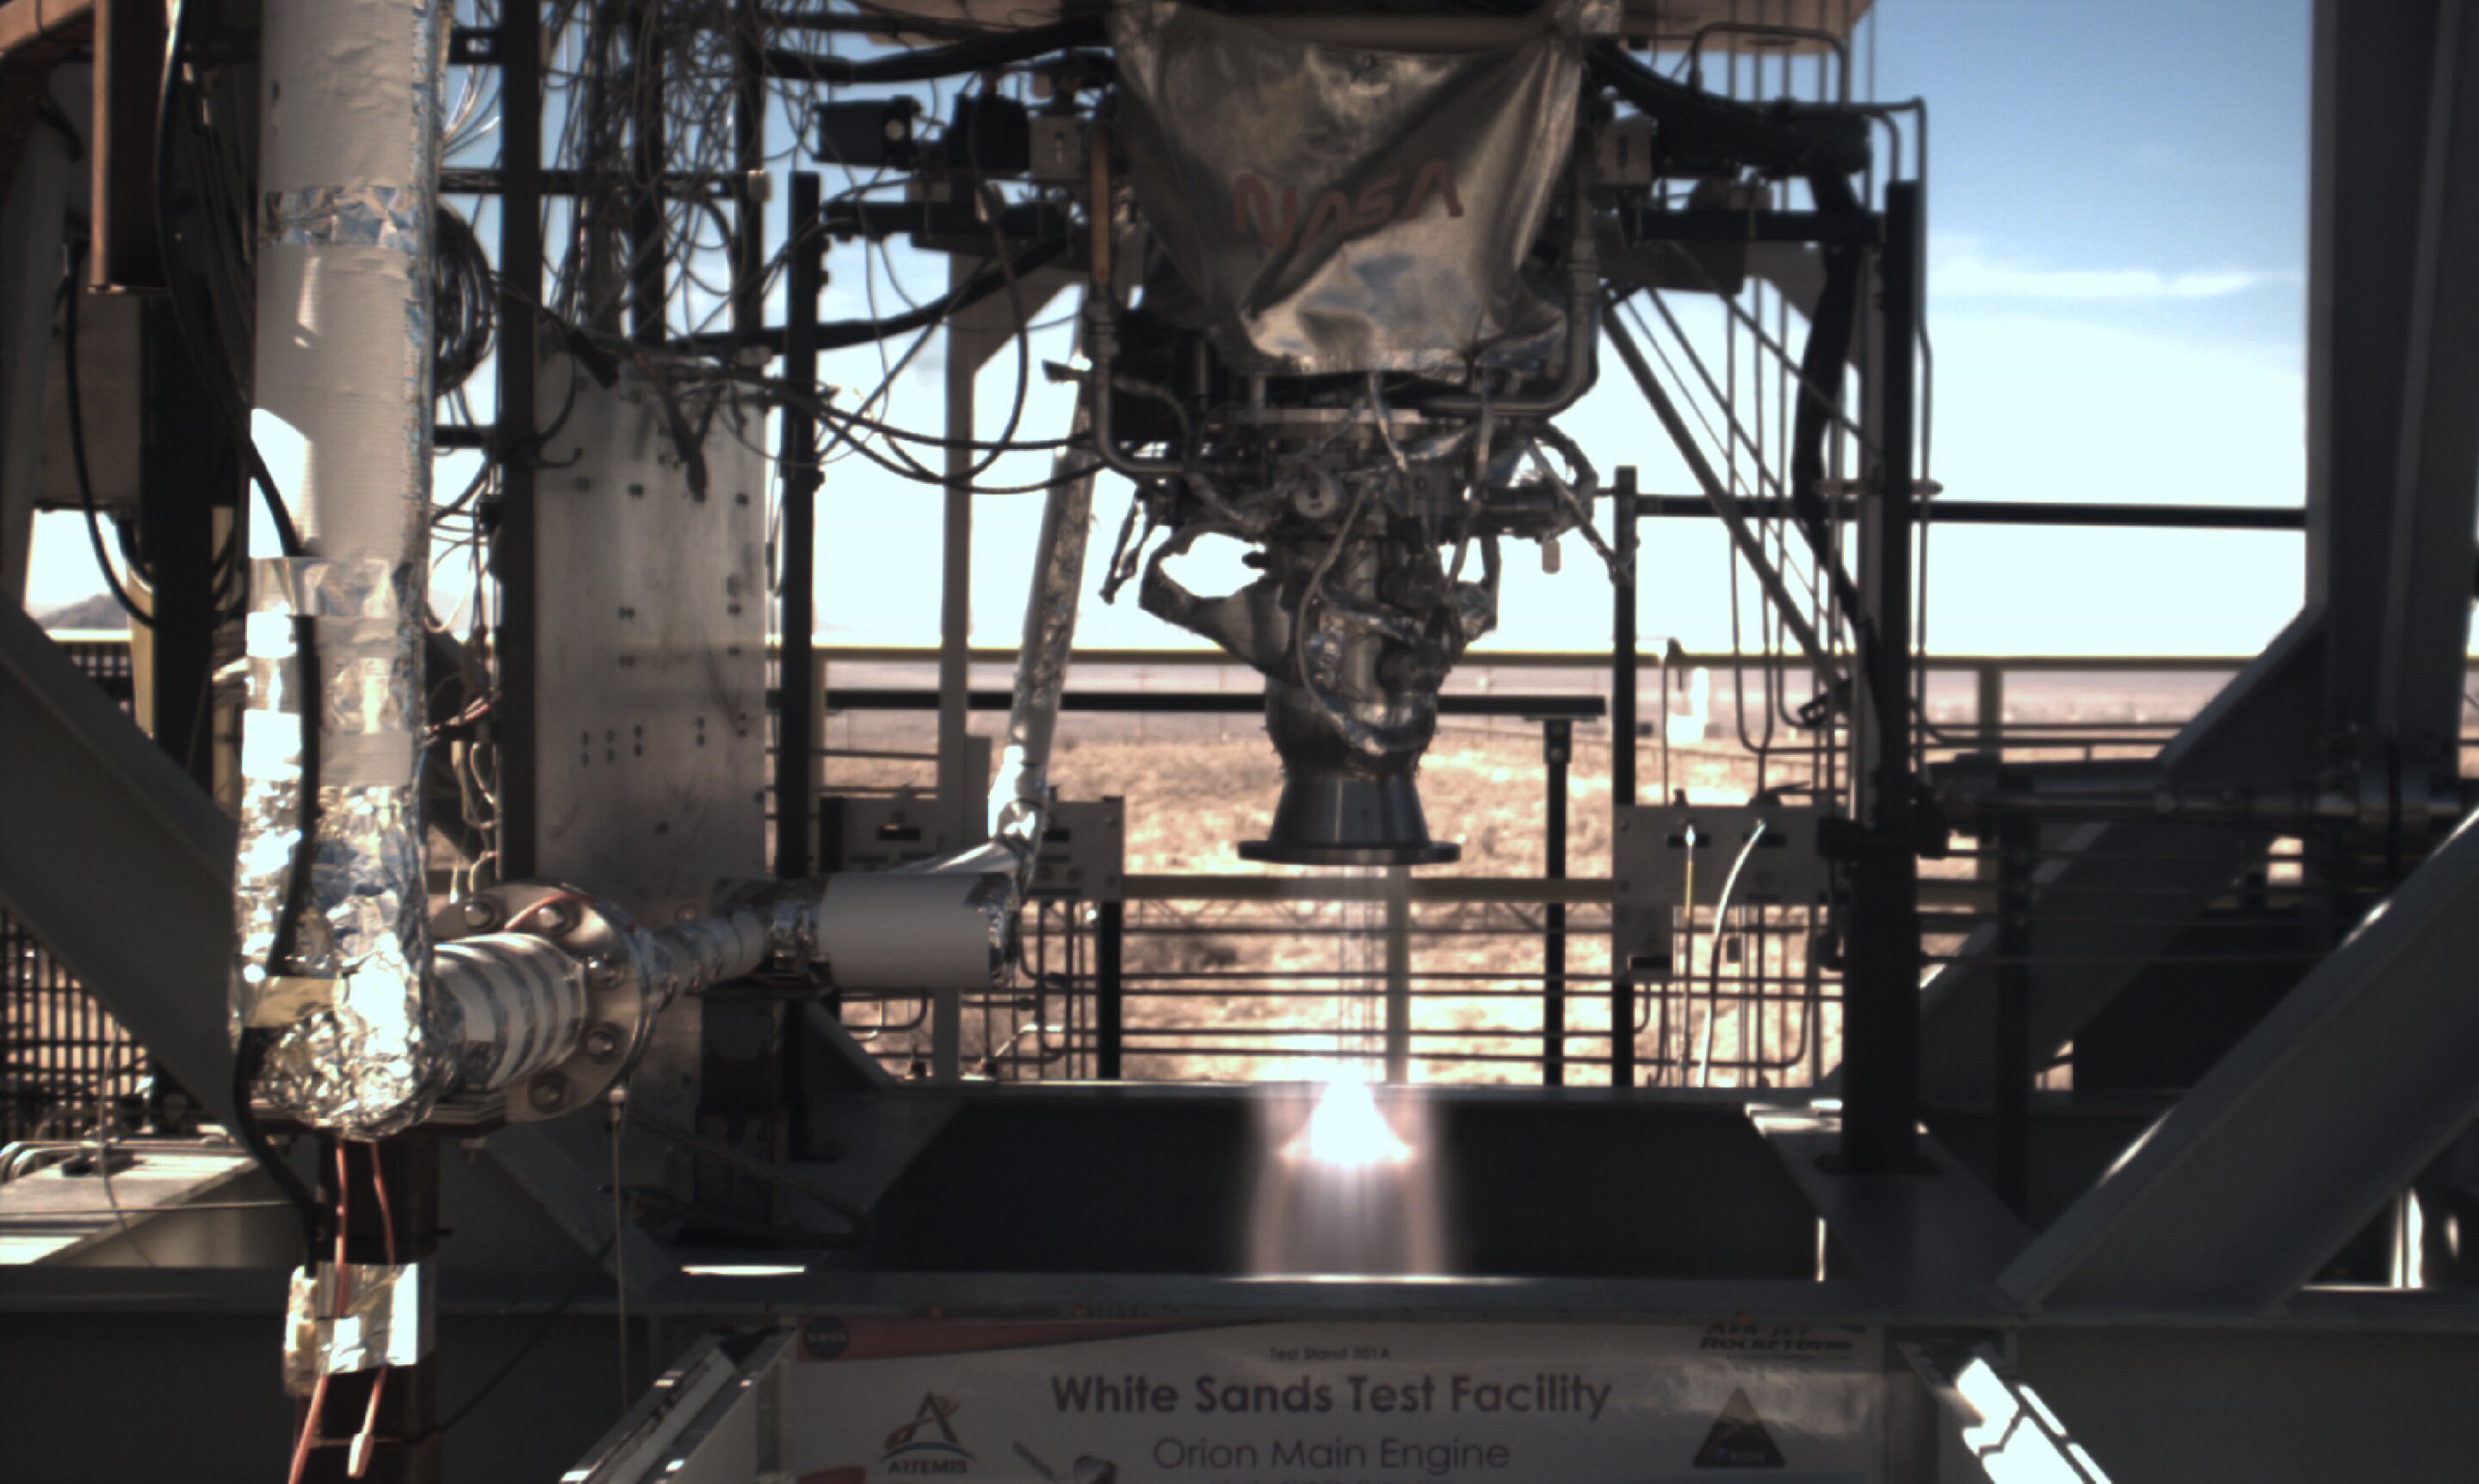 L’équipe de propulsion de White Sands teste un composant du moteur Orion imprimé en 3D